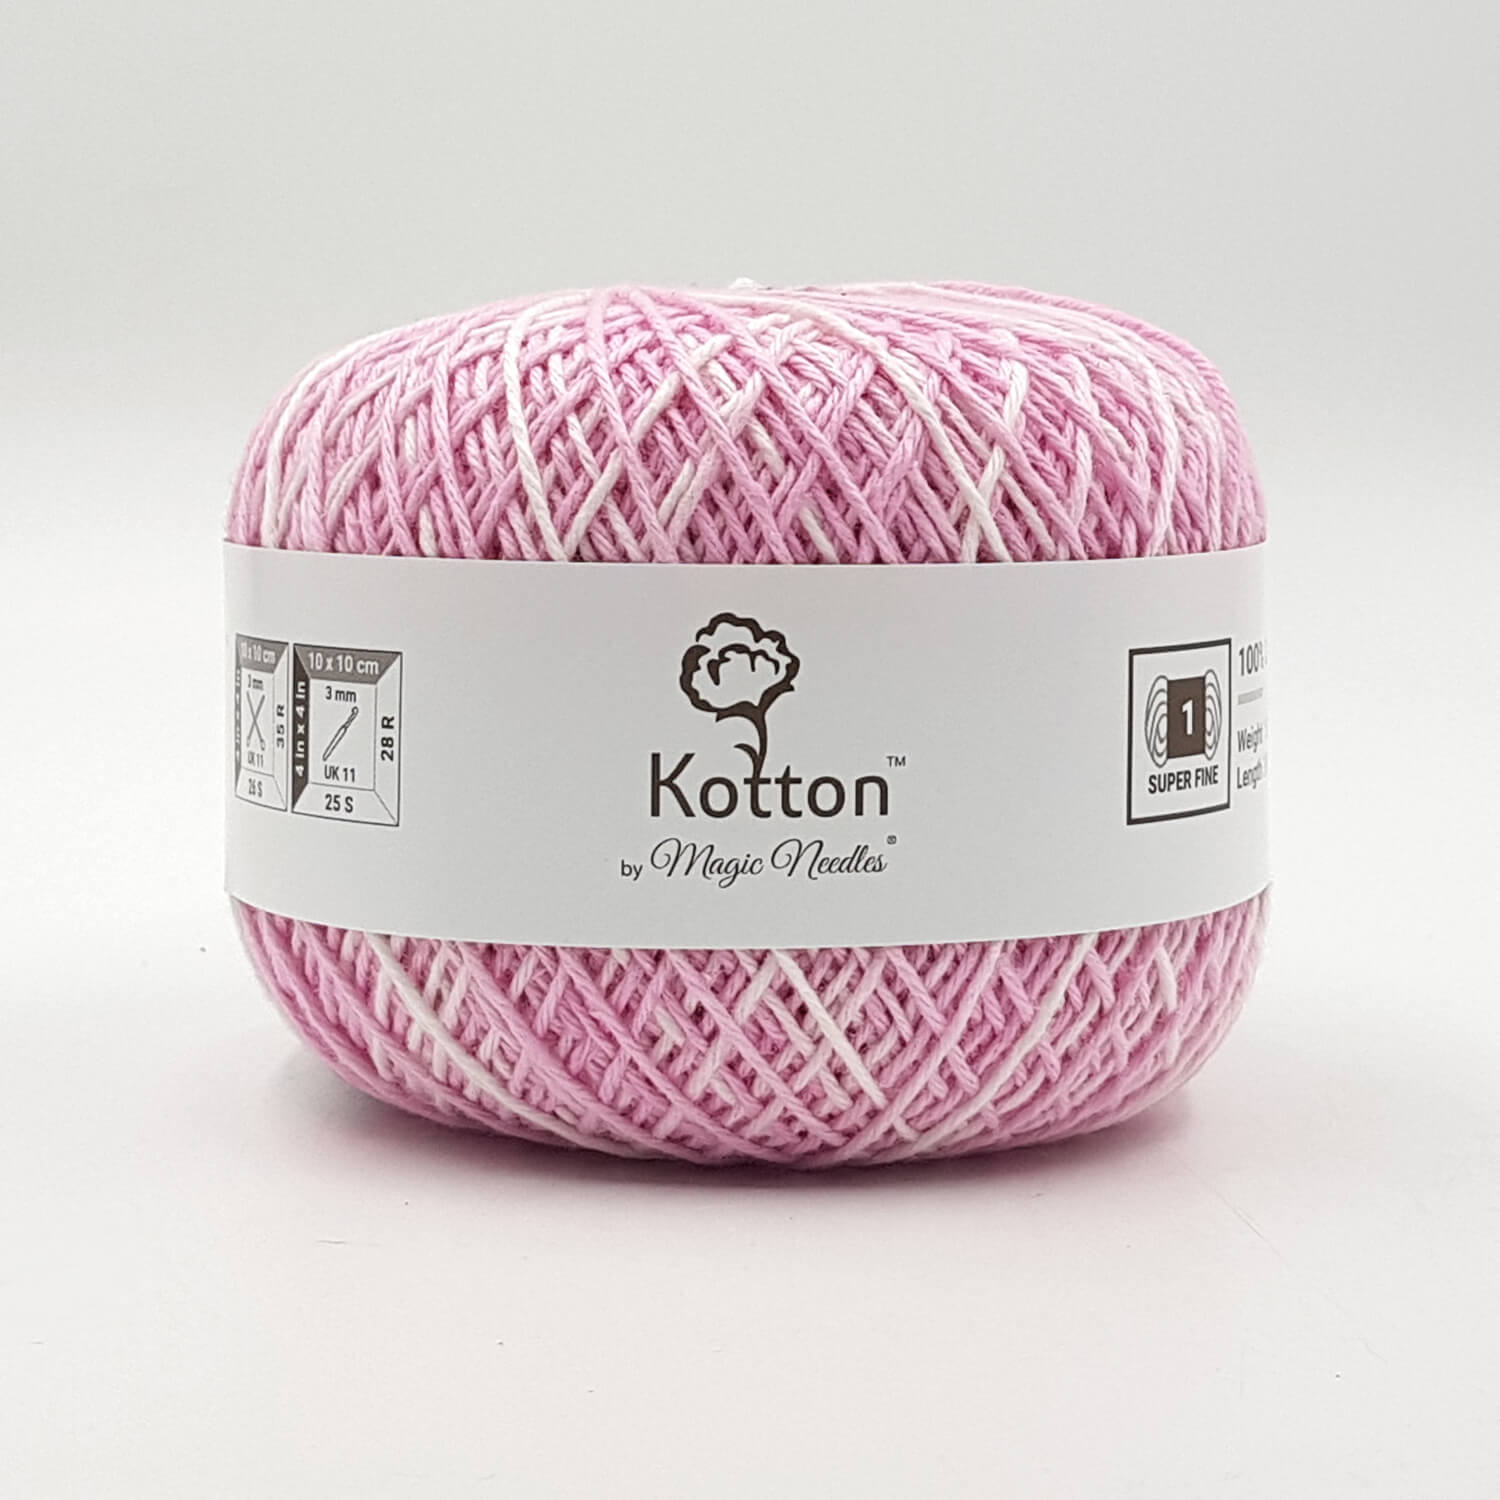 Kotton 4 ply Cotton Yarn 150 g - Multi Color 26